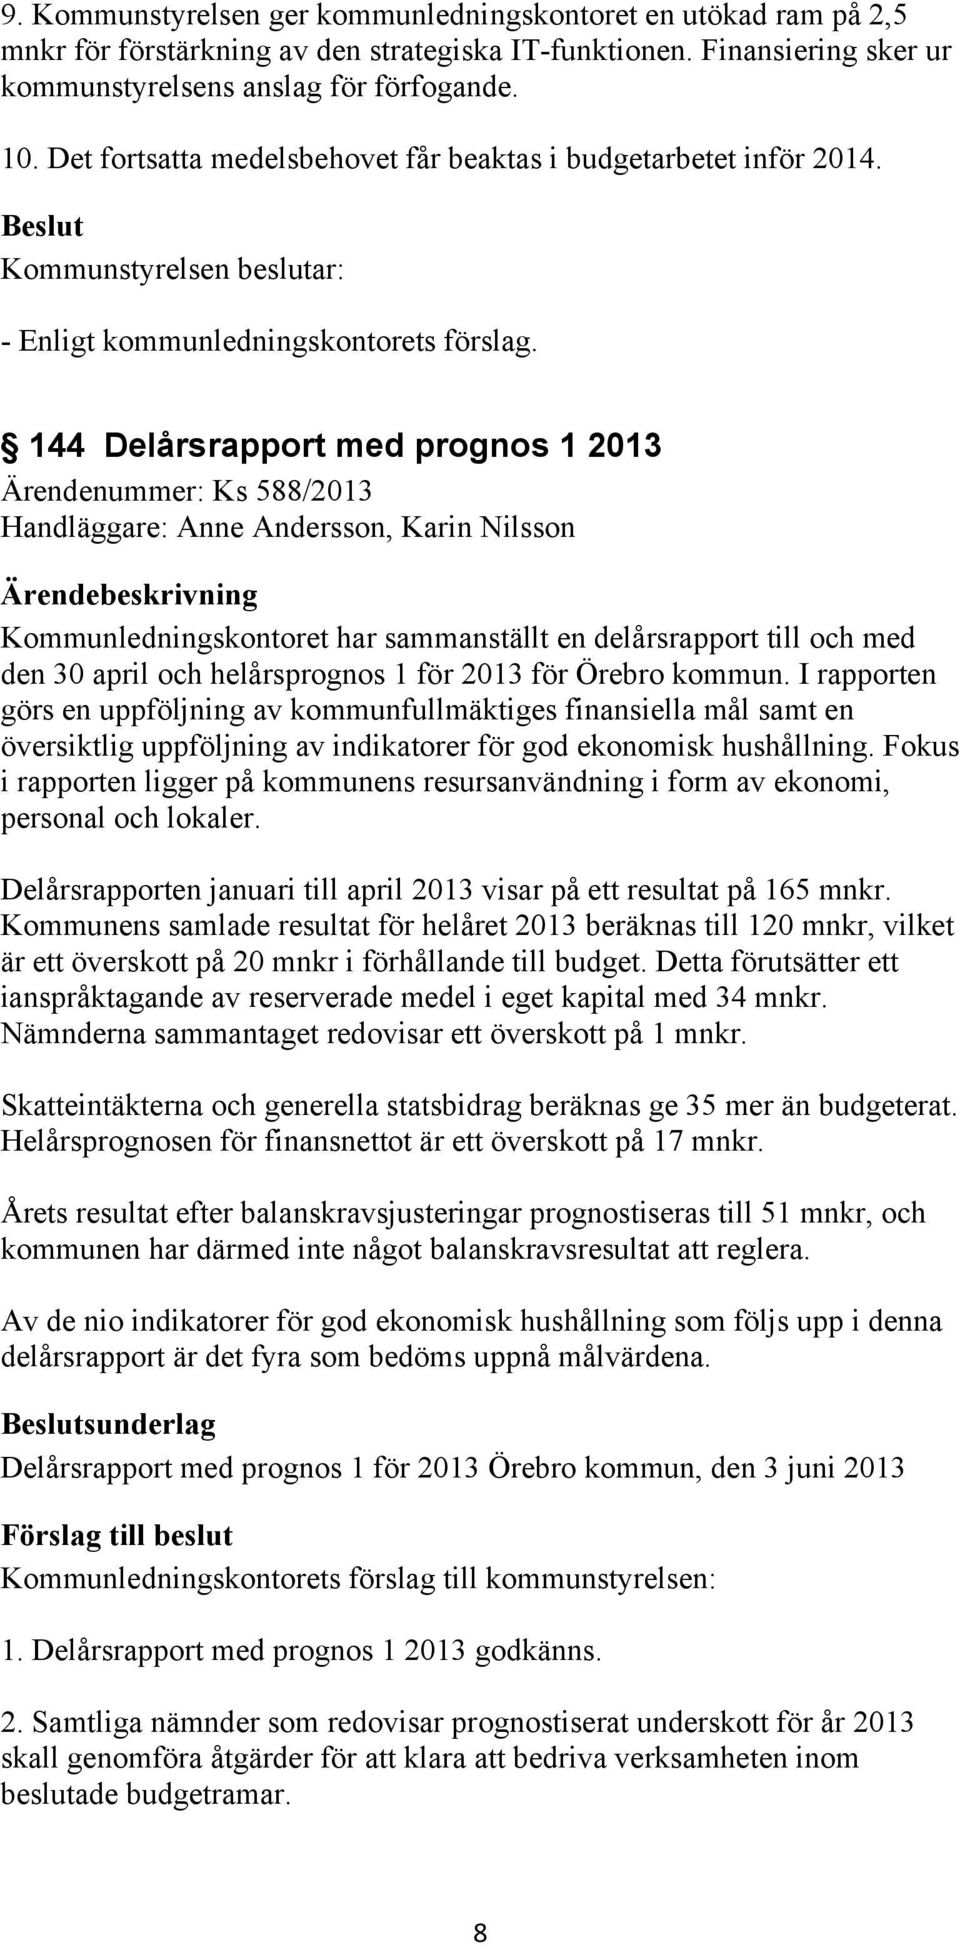 144 Delårsrapport med prognos 1 2013 Ärendenummer: Ks 588/2013 Handläggare: Anne Andersson, Karin Nilsson Kommunledningskontoret har sammanställt en delårsrapport till och med den 30 april och